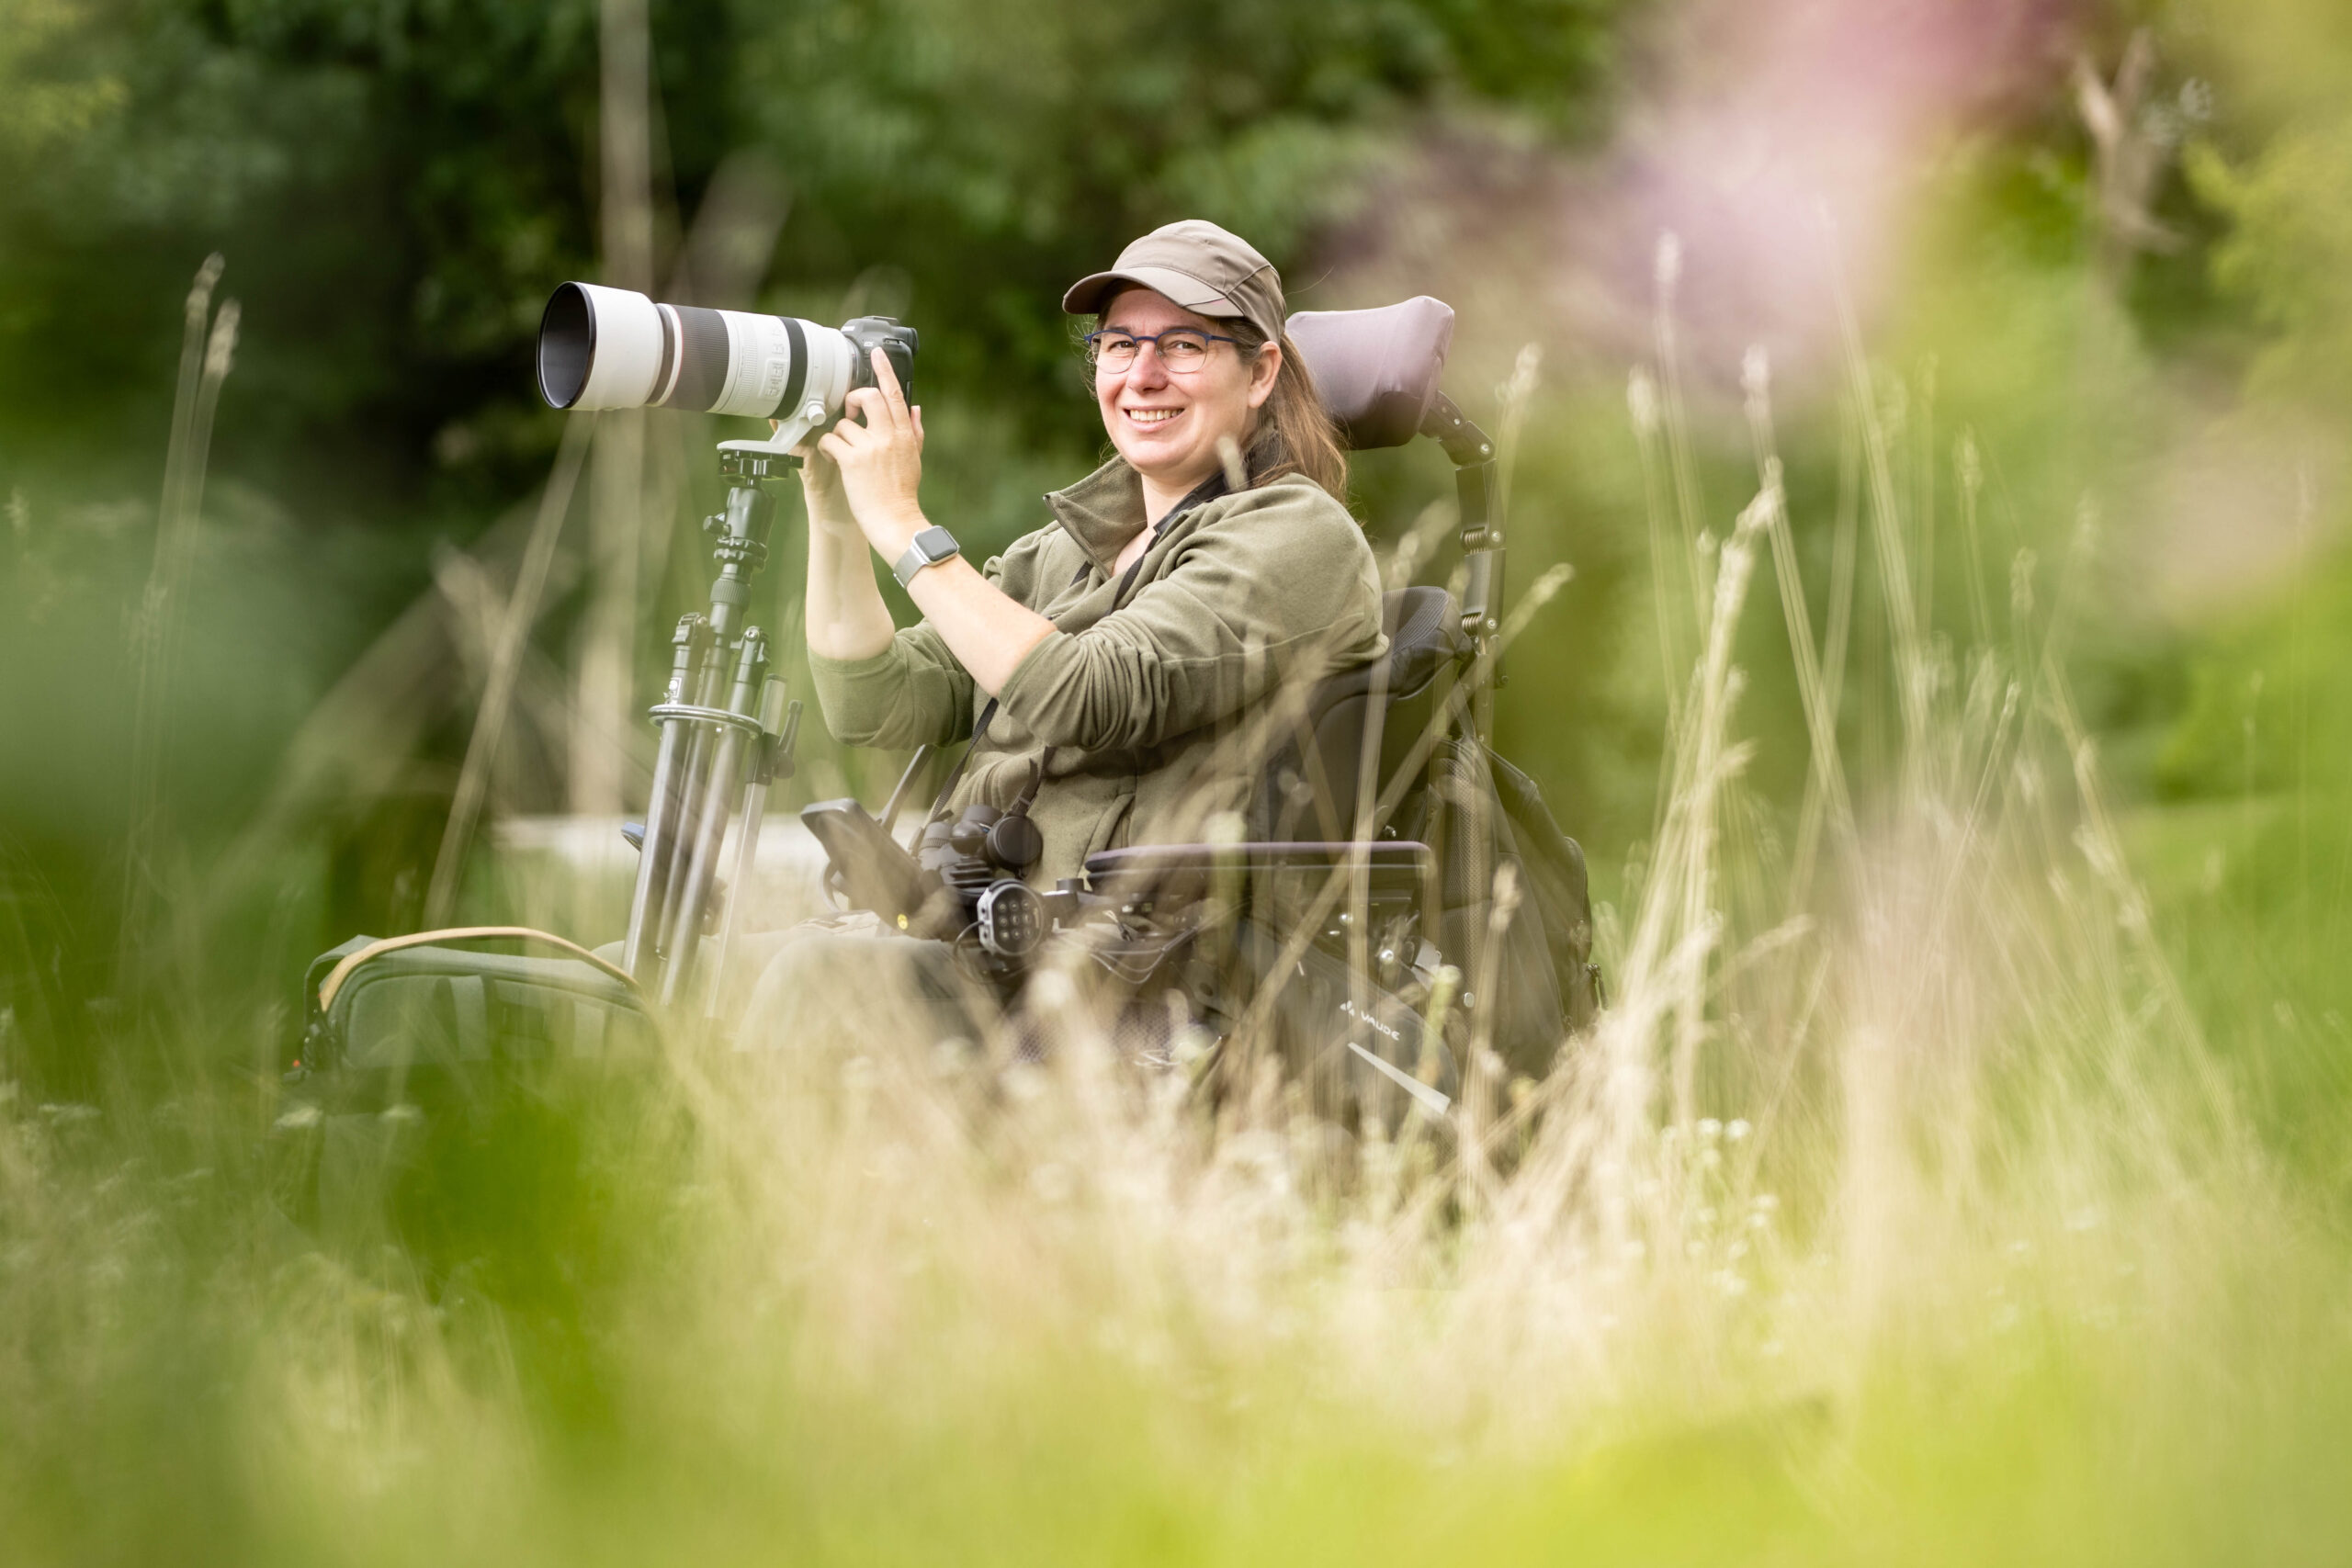 April Ranshuijsen zit in haar rolstoel met voorop een camera met telelens. Zij kijkt zijwaarts naar de fotograaf tussen dromerige grashalmen door.